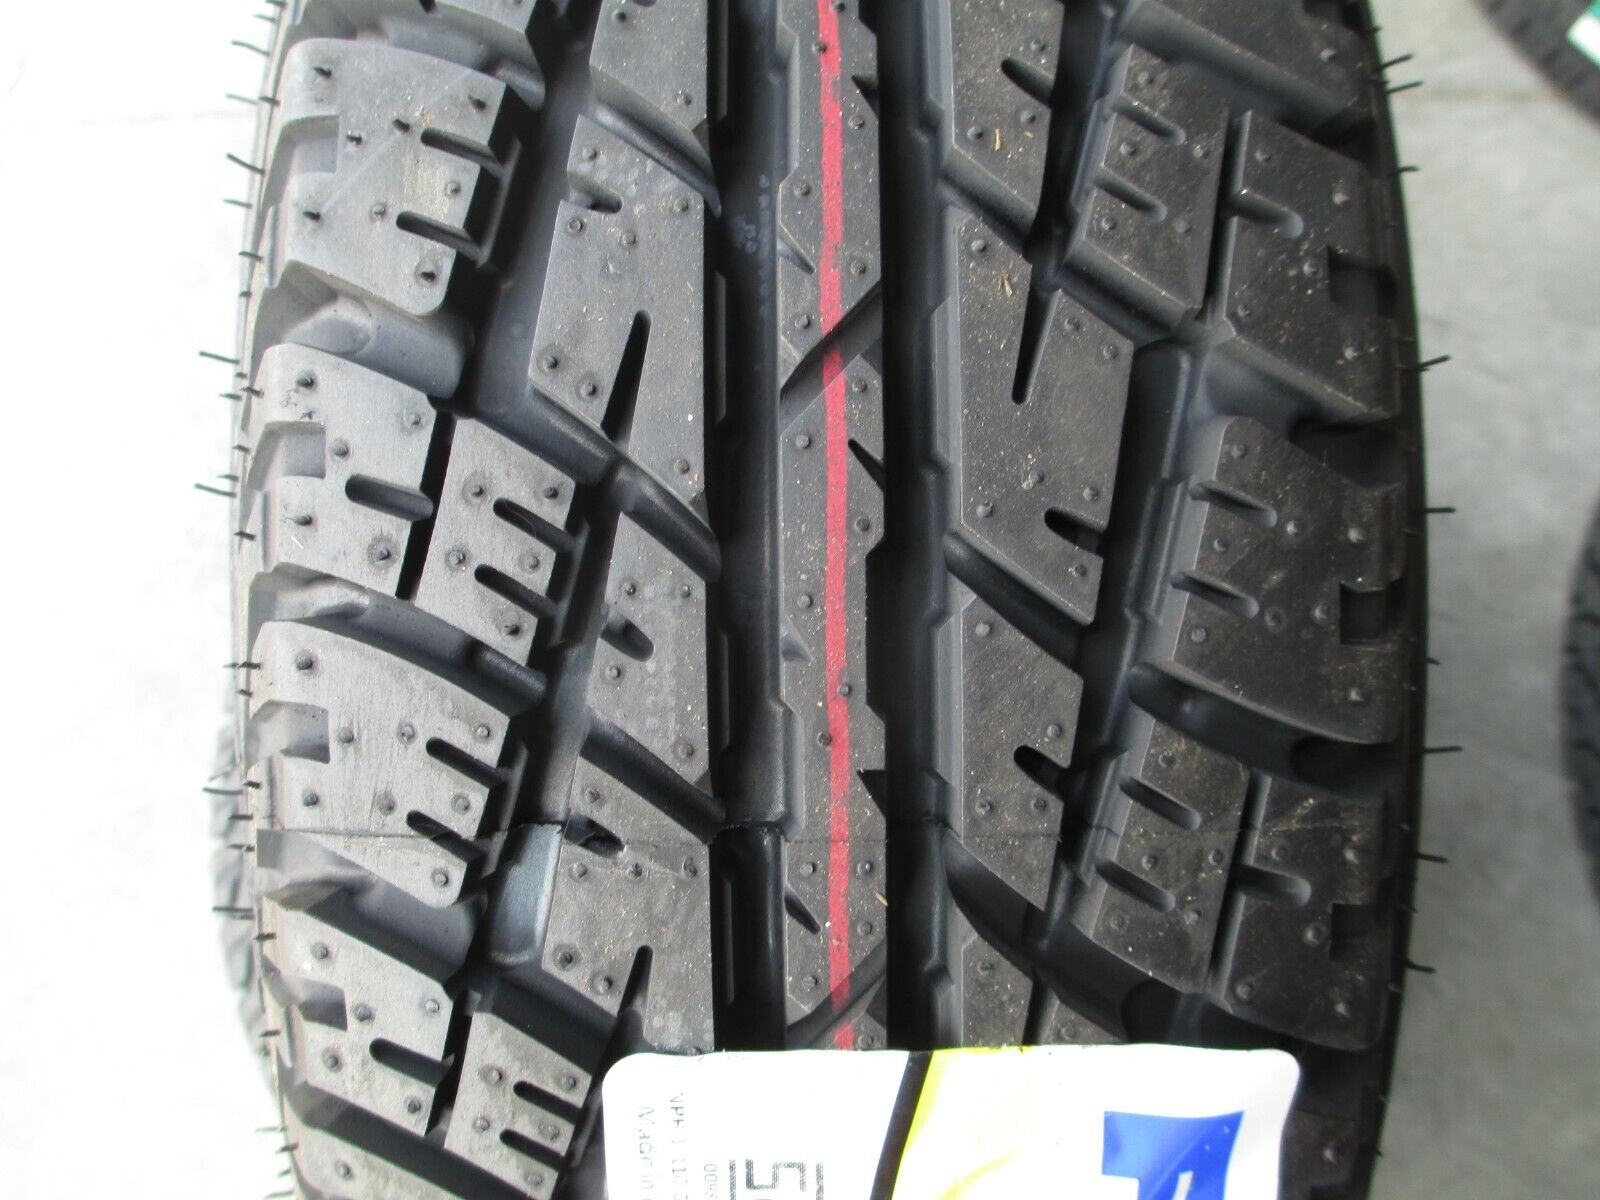 2 New 185/70R14 Inch Forceum ATZ-R All Terrain Tires 1857014 70 14 R14 70R 500AA